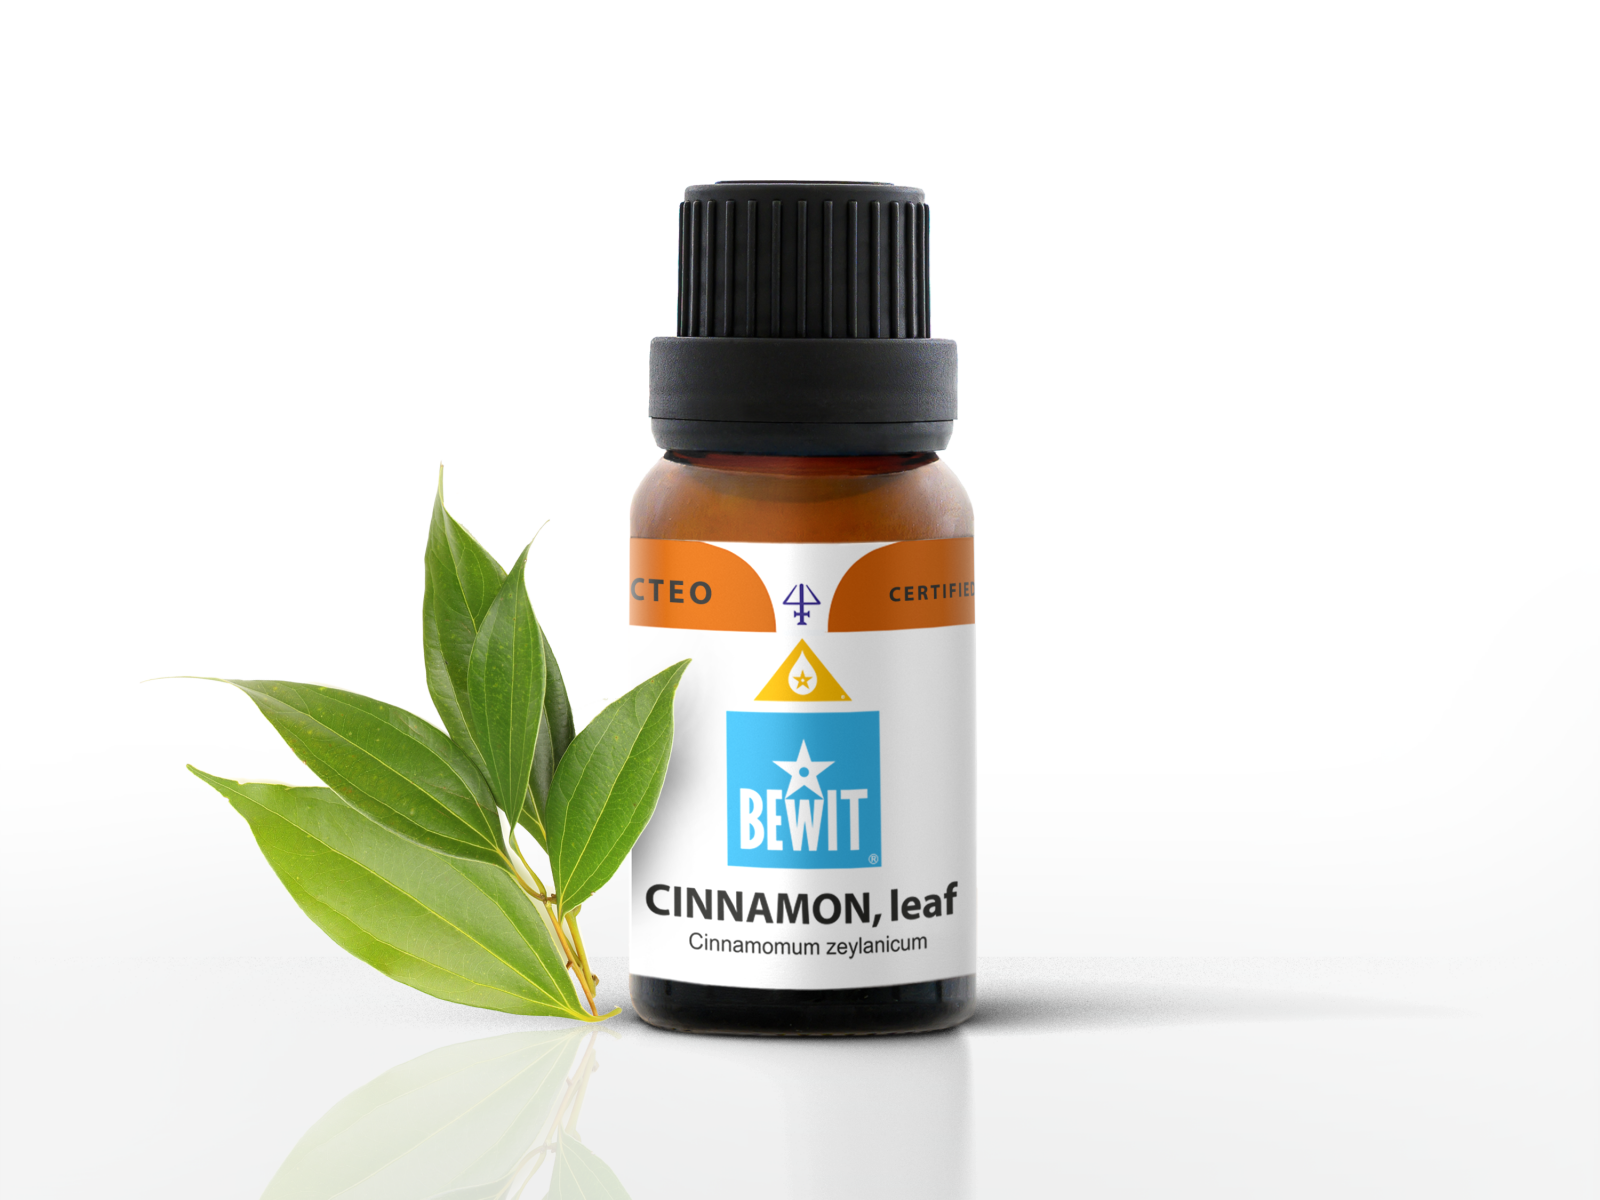 BEWIT Cinnamon, leaf - 100% pure essential oil